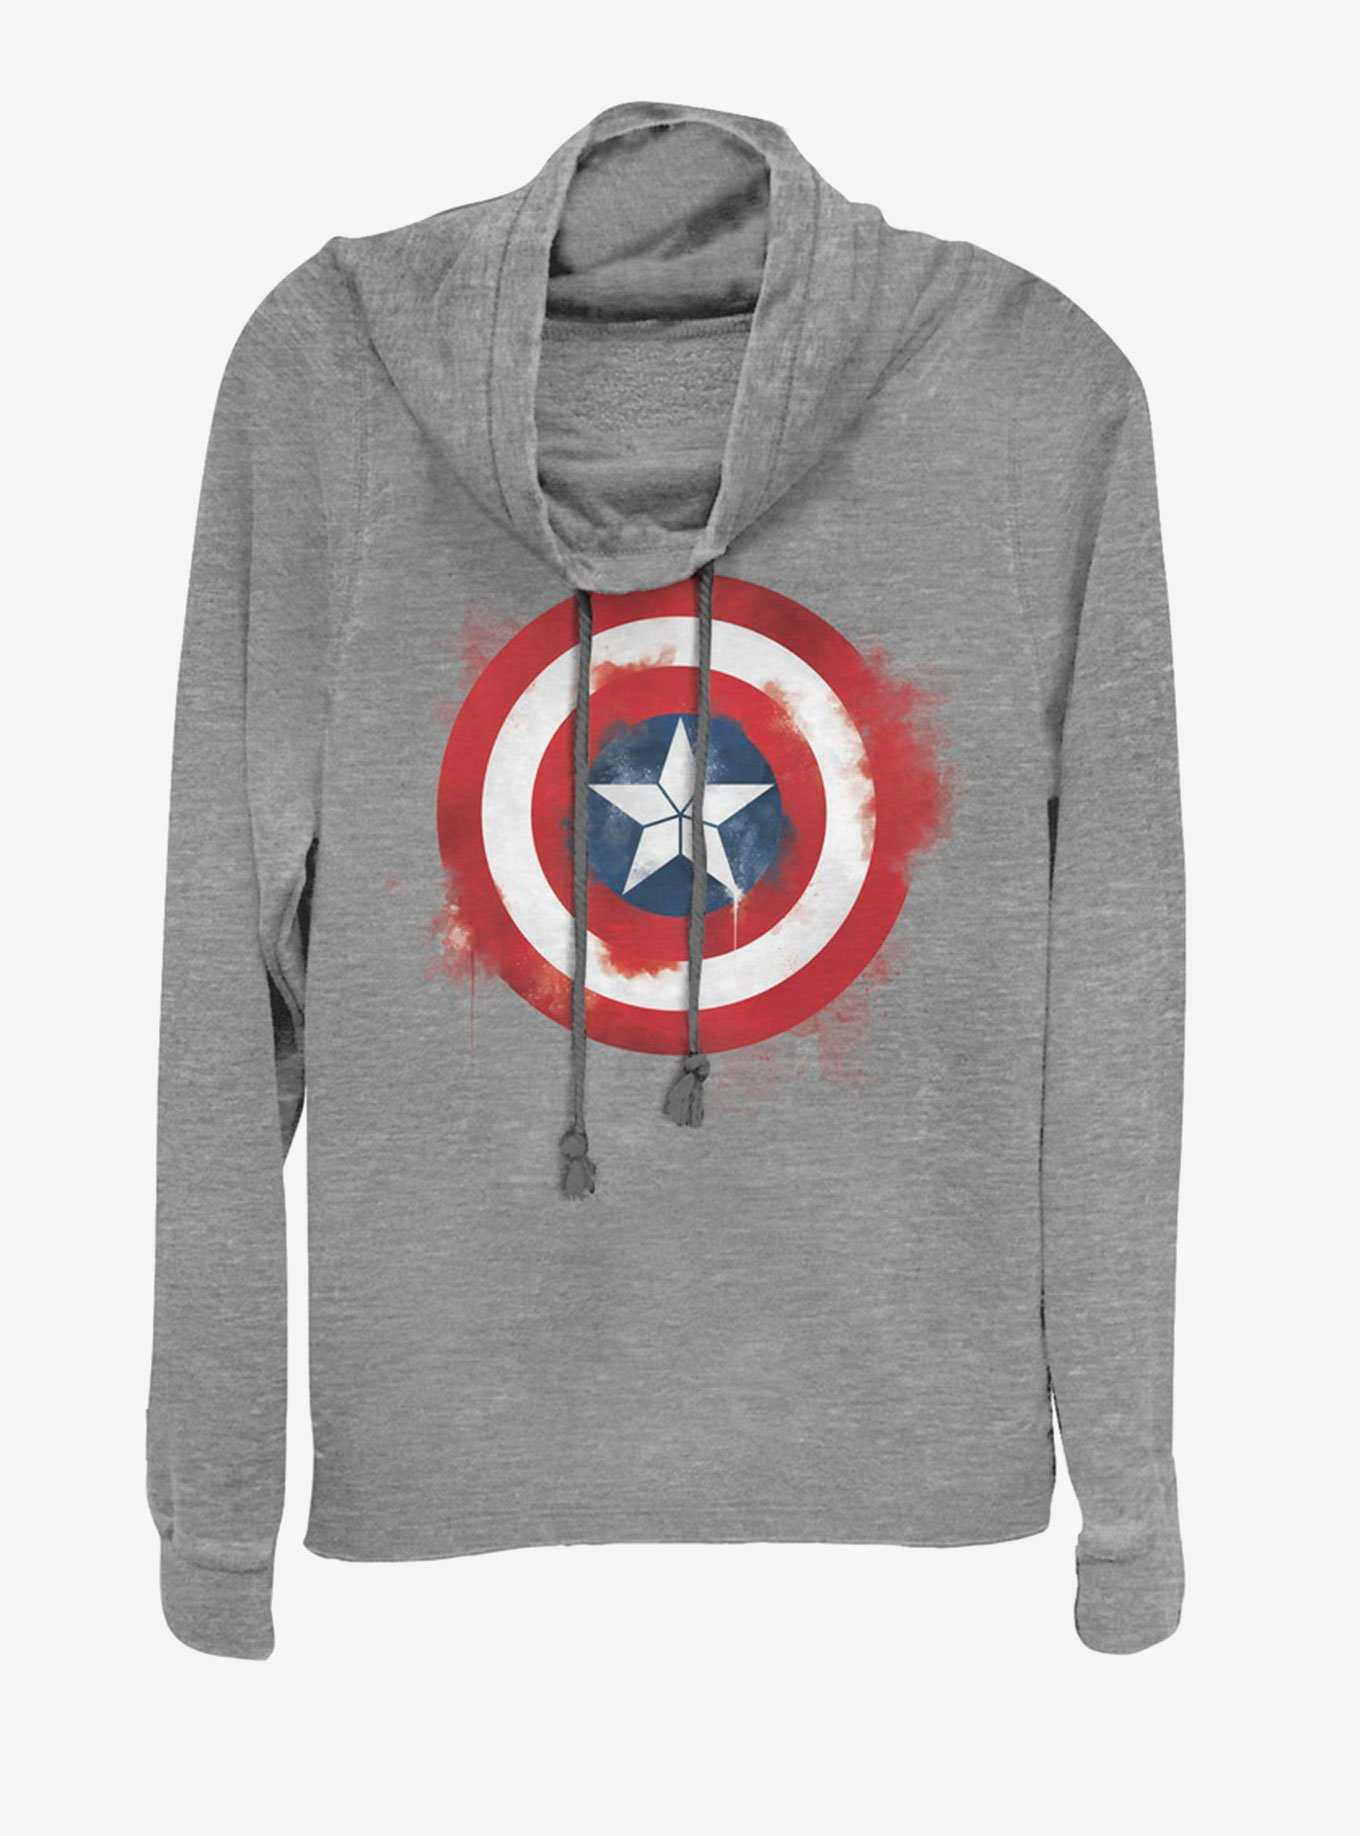 Marvel Avengers: Endgame Captain America Spray Logo Girls Sweatshirt, , hi-res